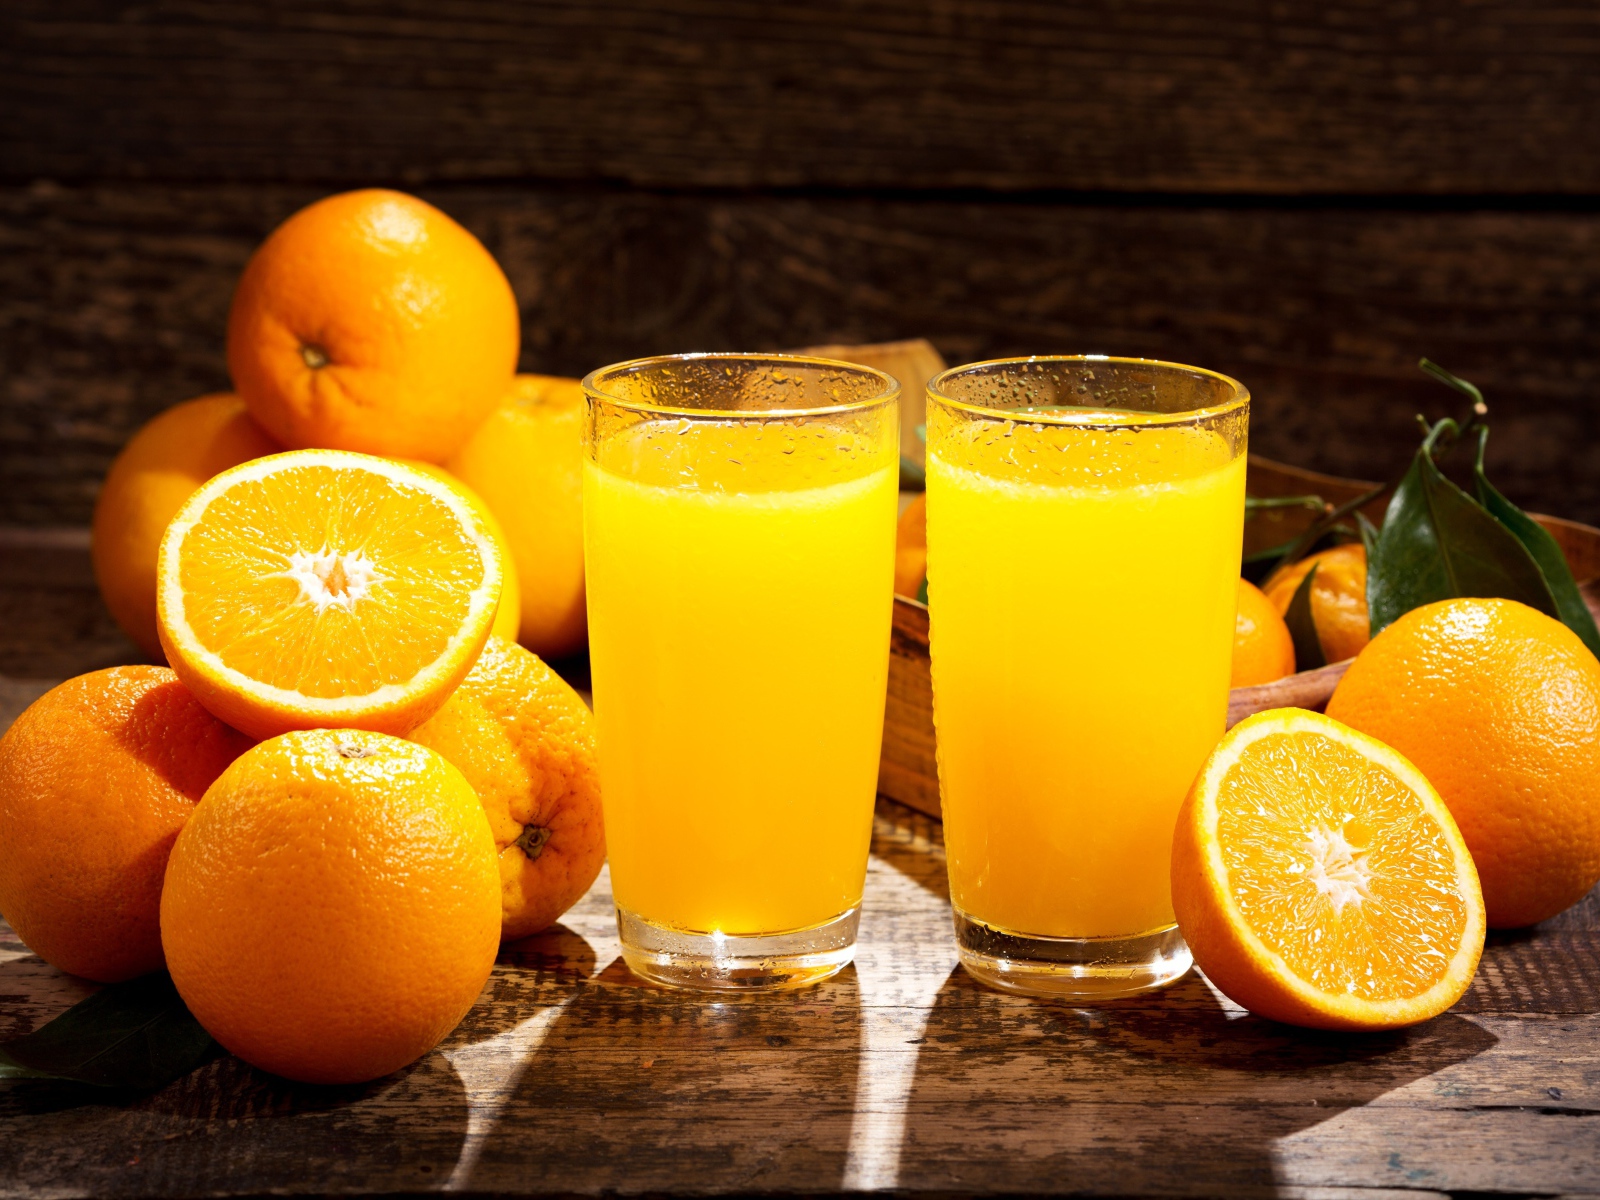 Два стакана свежего апельсинового сока на столе с фруктами